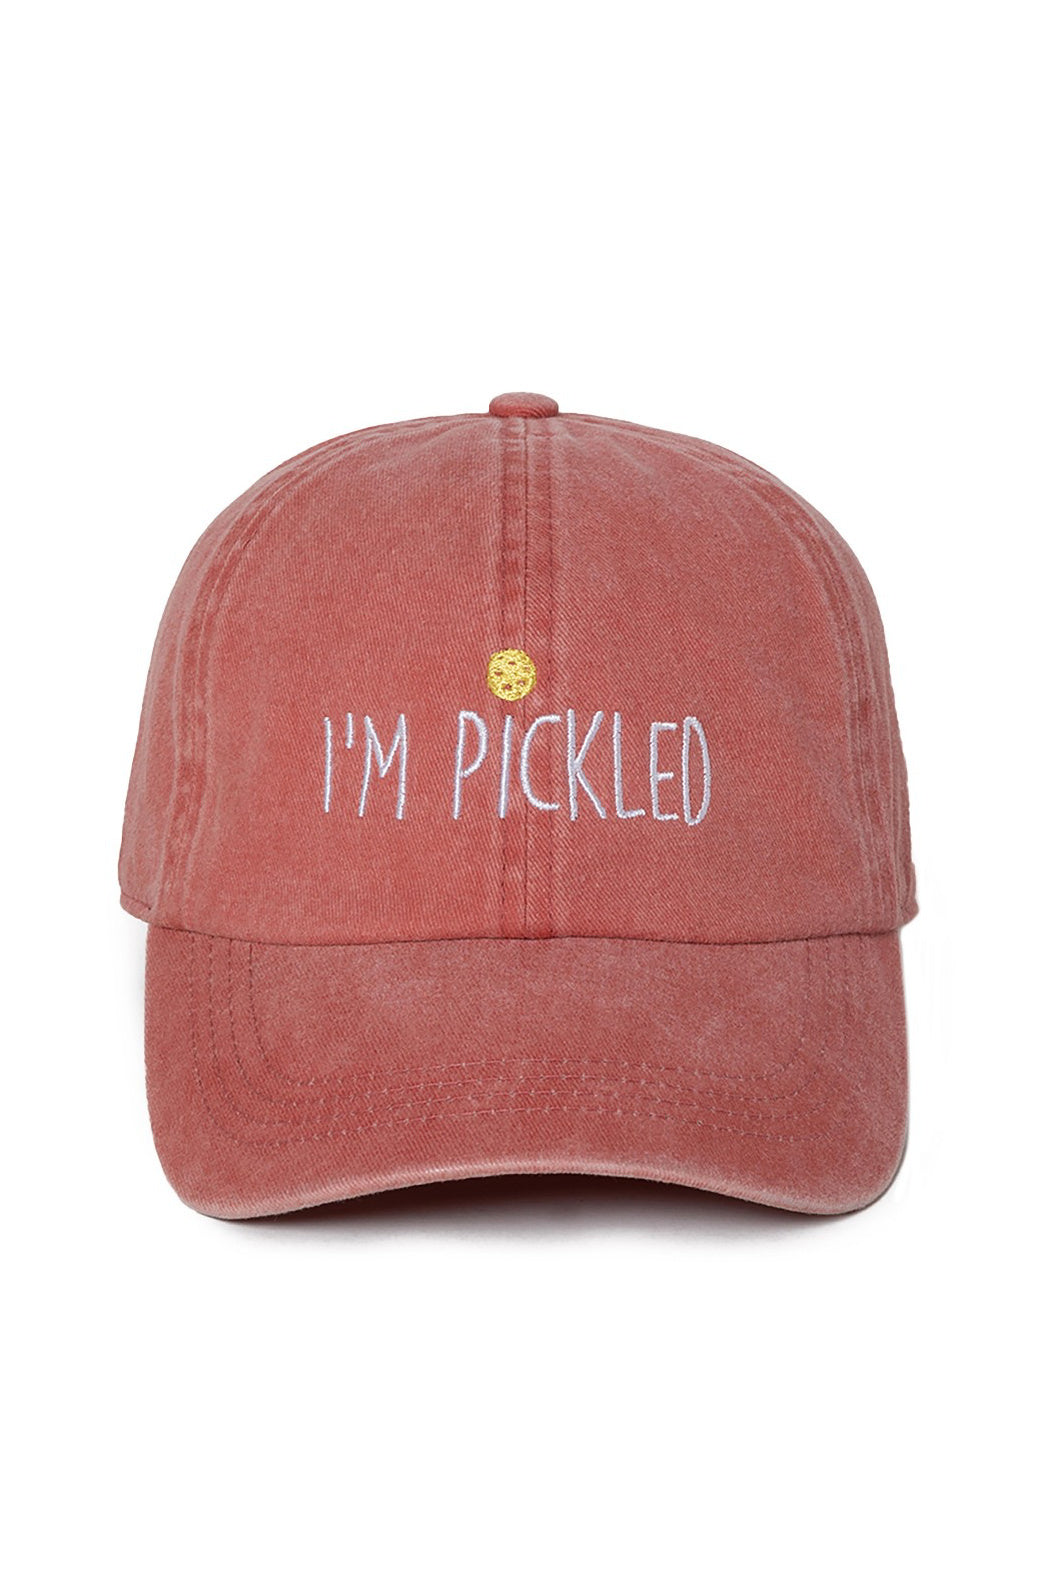 I'm Pickled Pickleball Cap